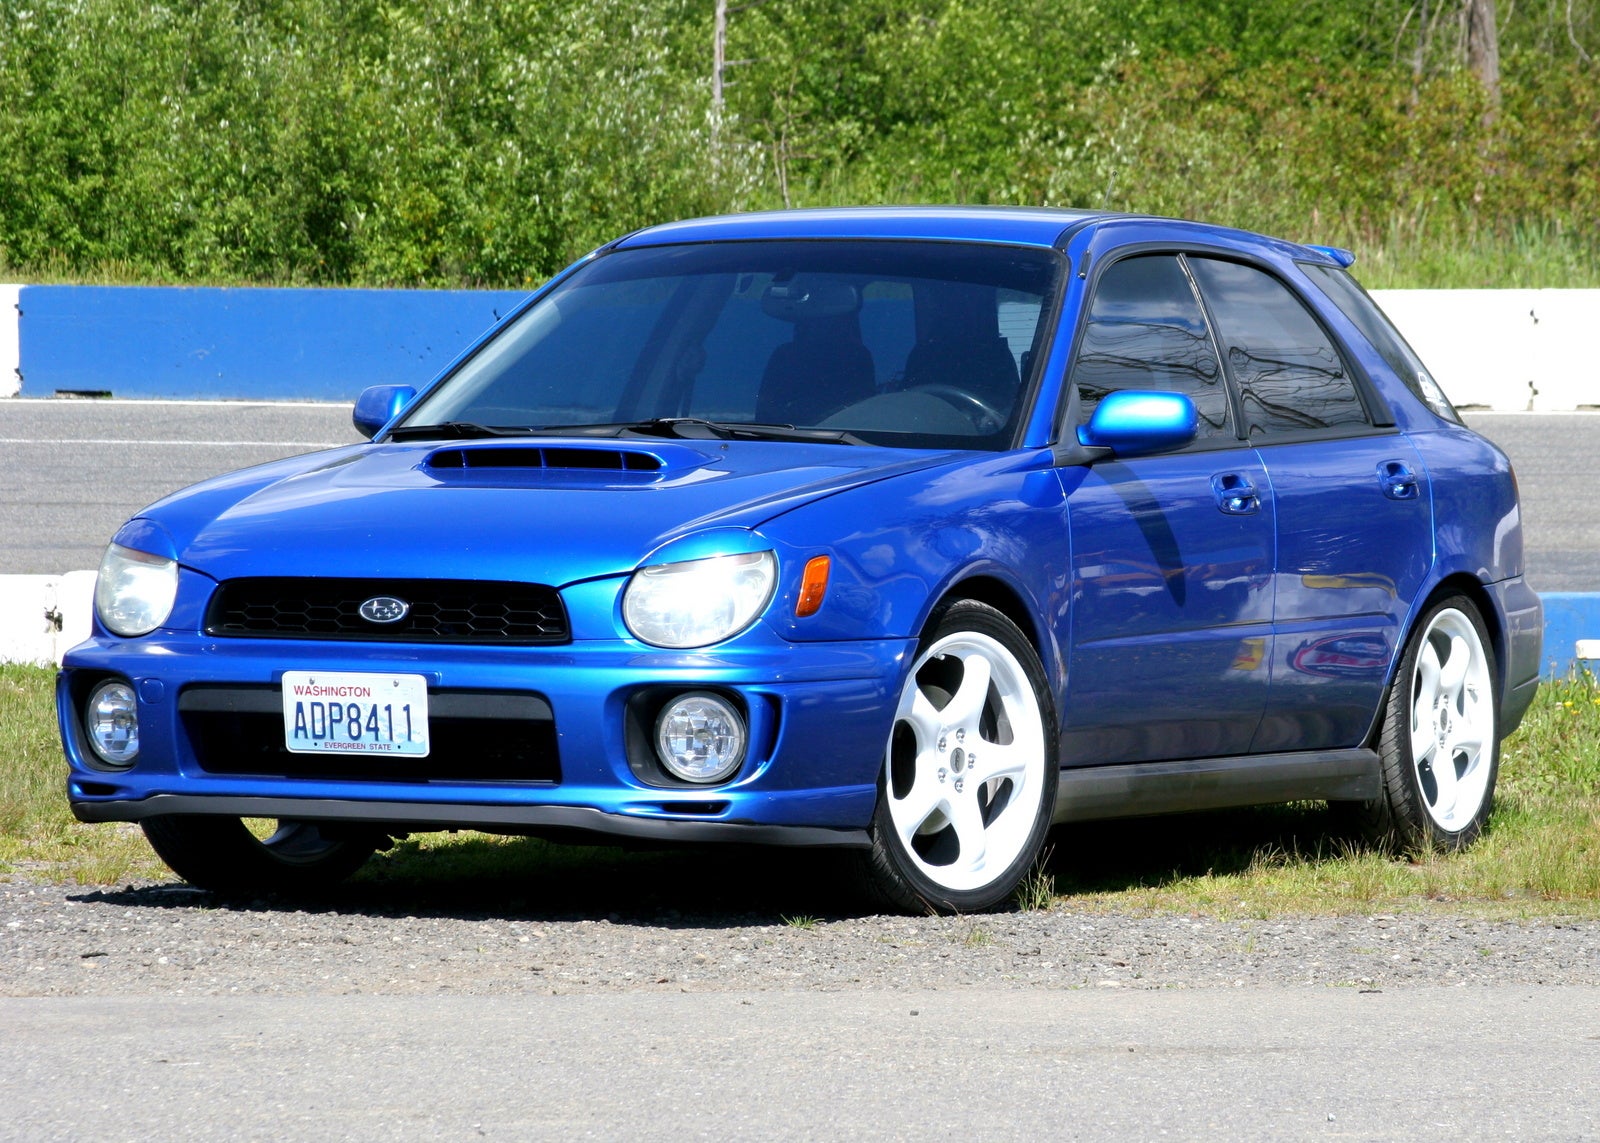 2002 Subaru Impreza WRX Exterior Pictures CarGurus